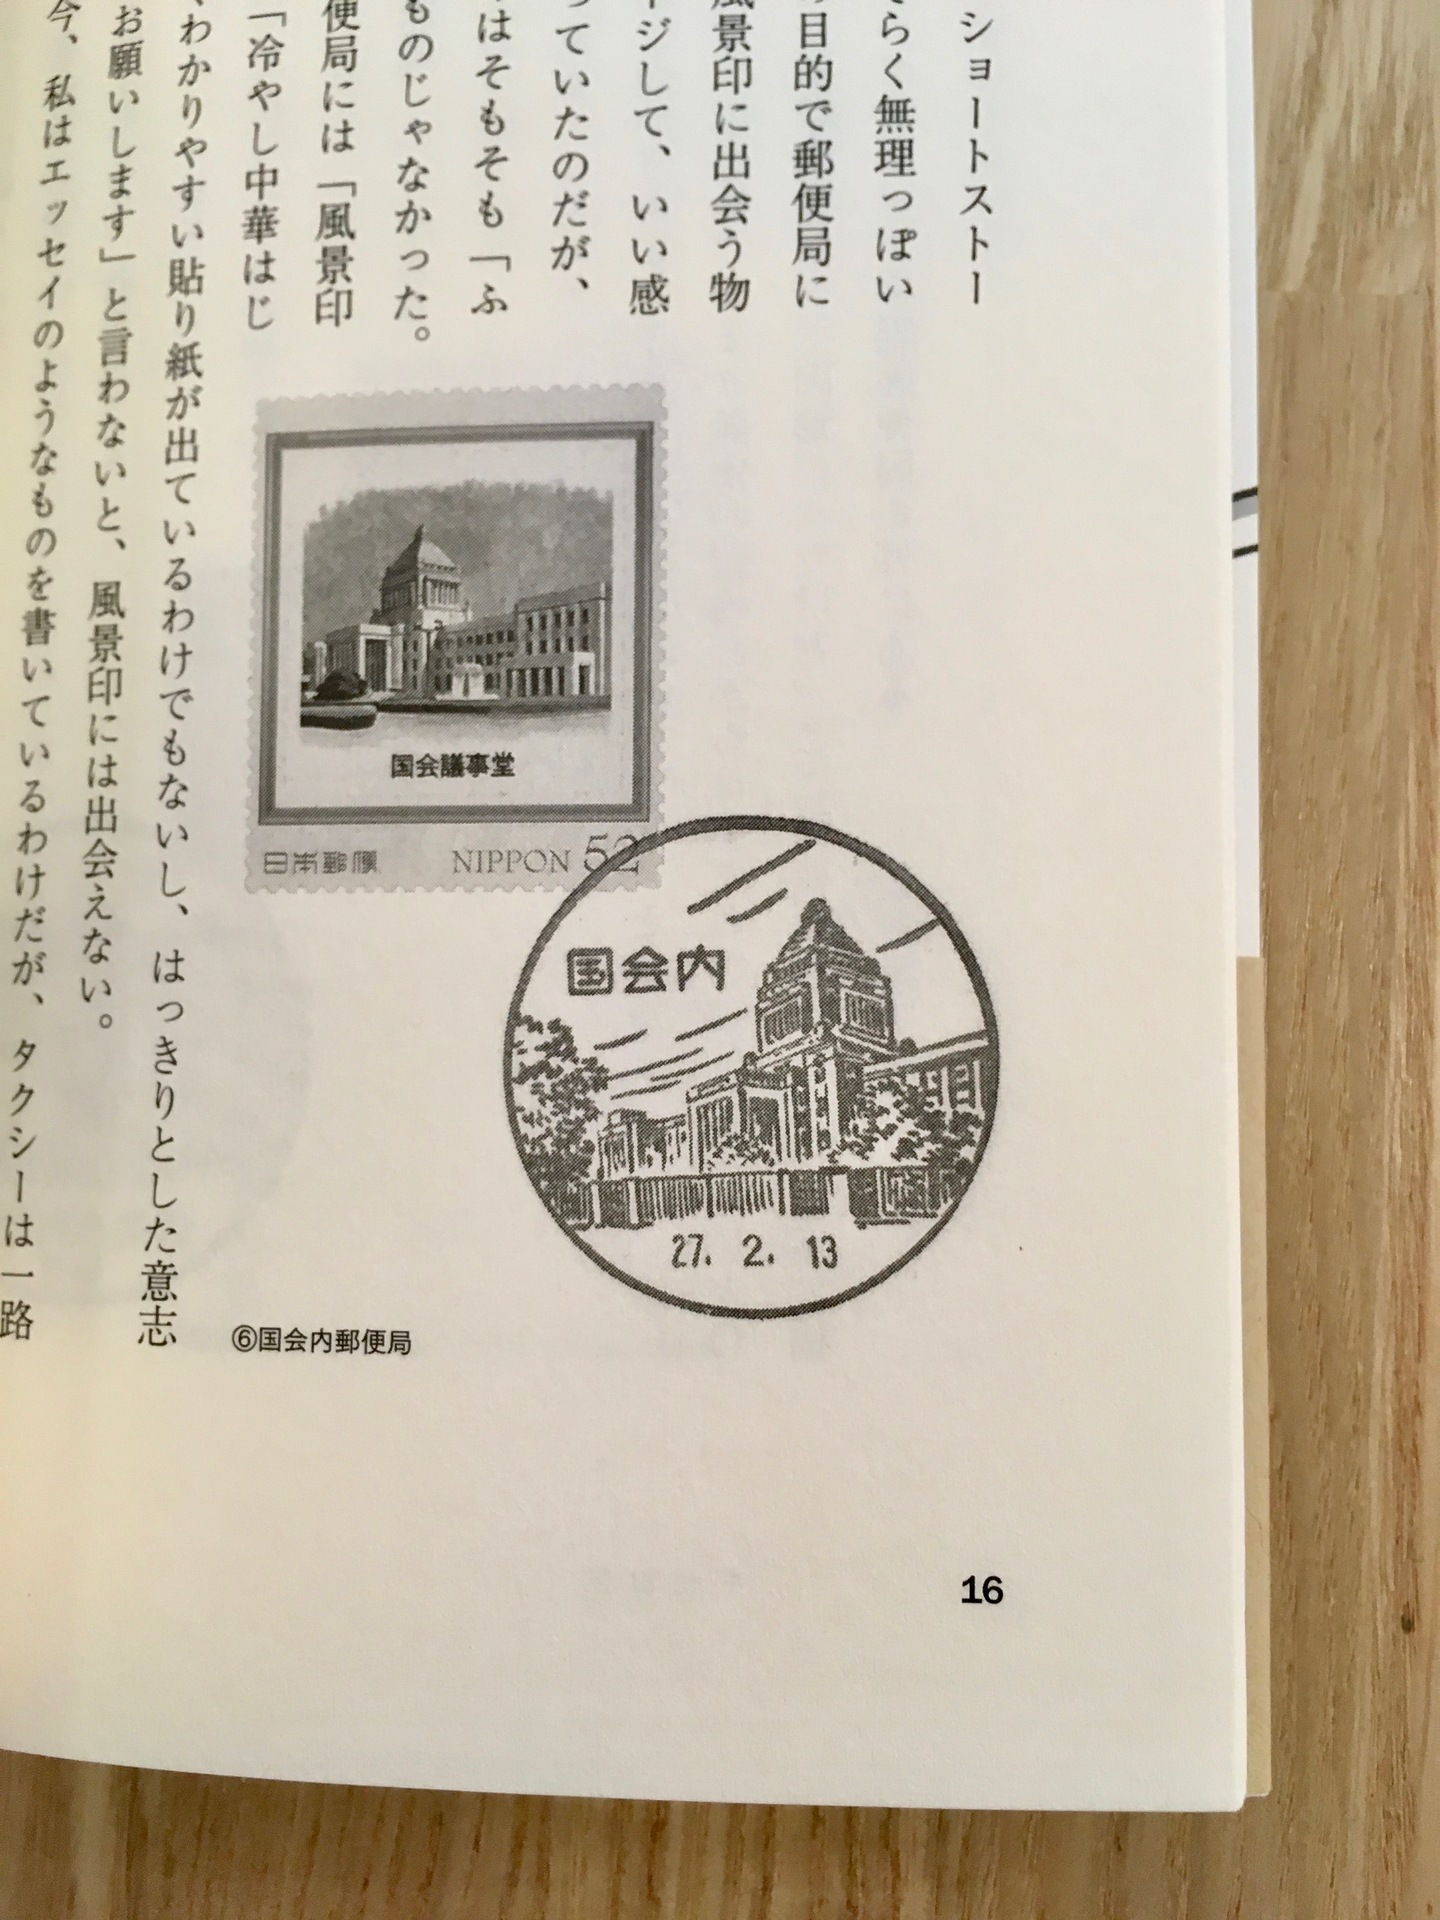 東京 しるしのある風景』（河出書房新社）: ひるねこBOOKSブログ 本の紹介と本のこと